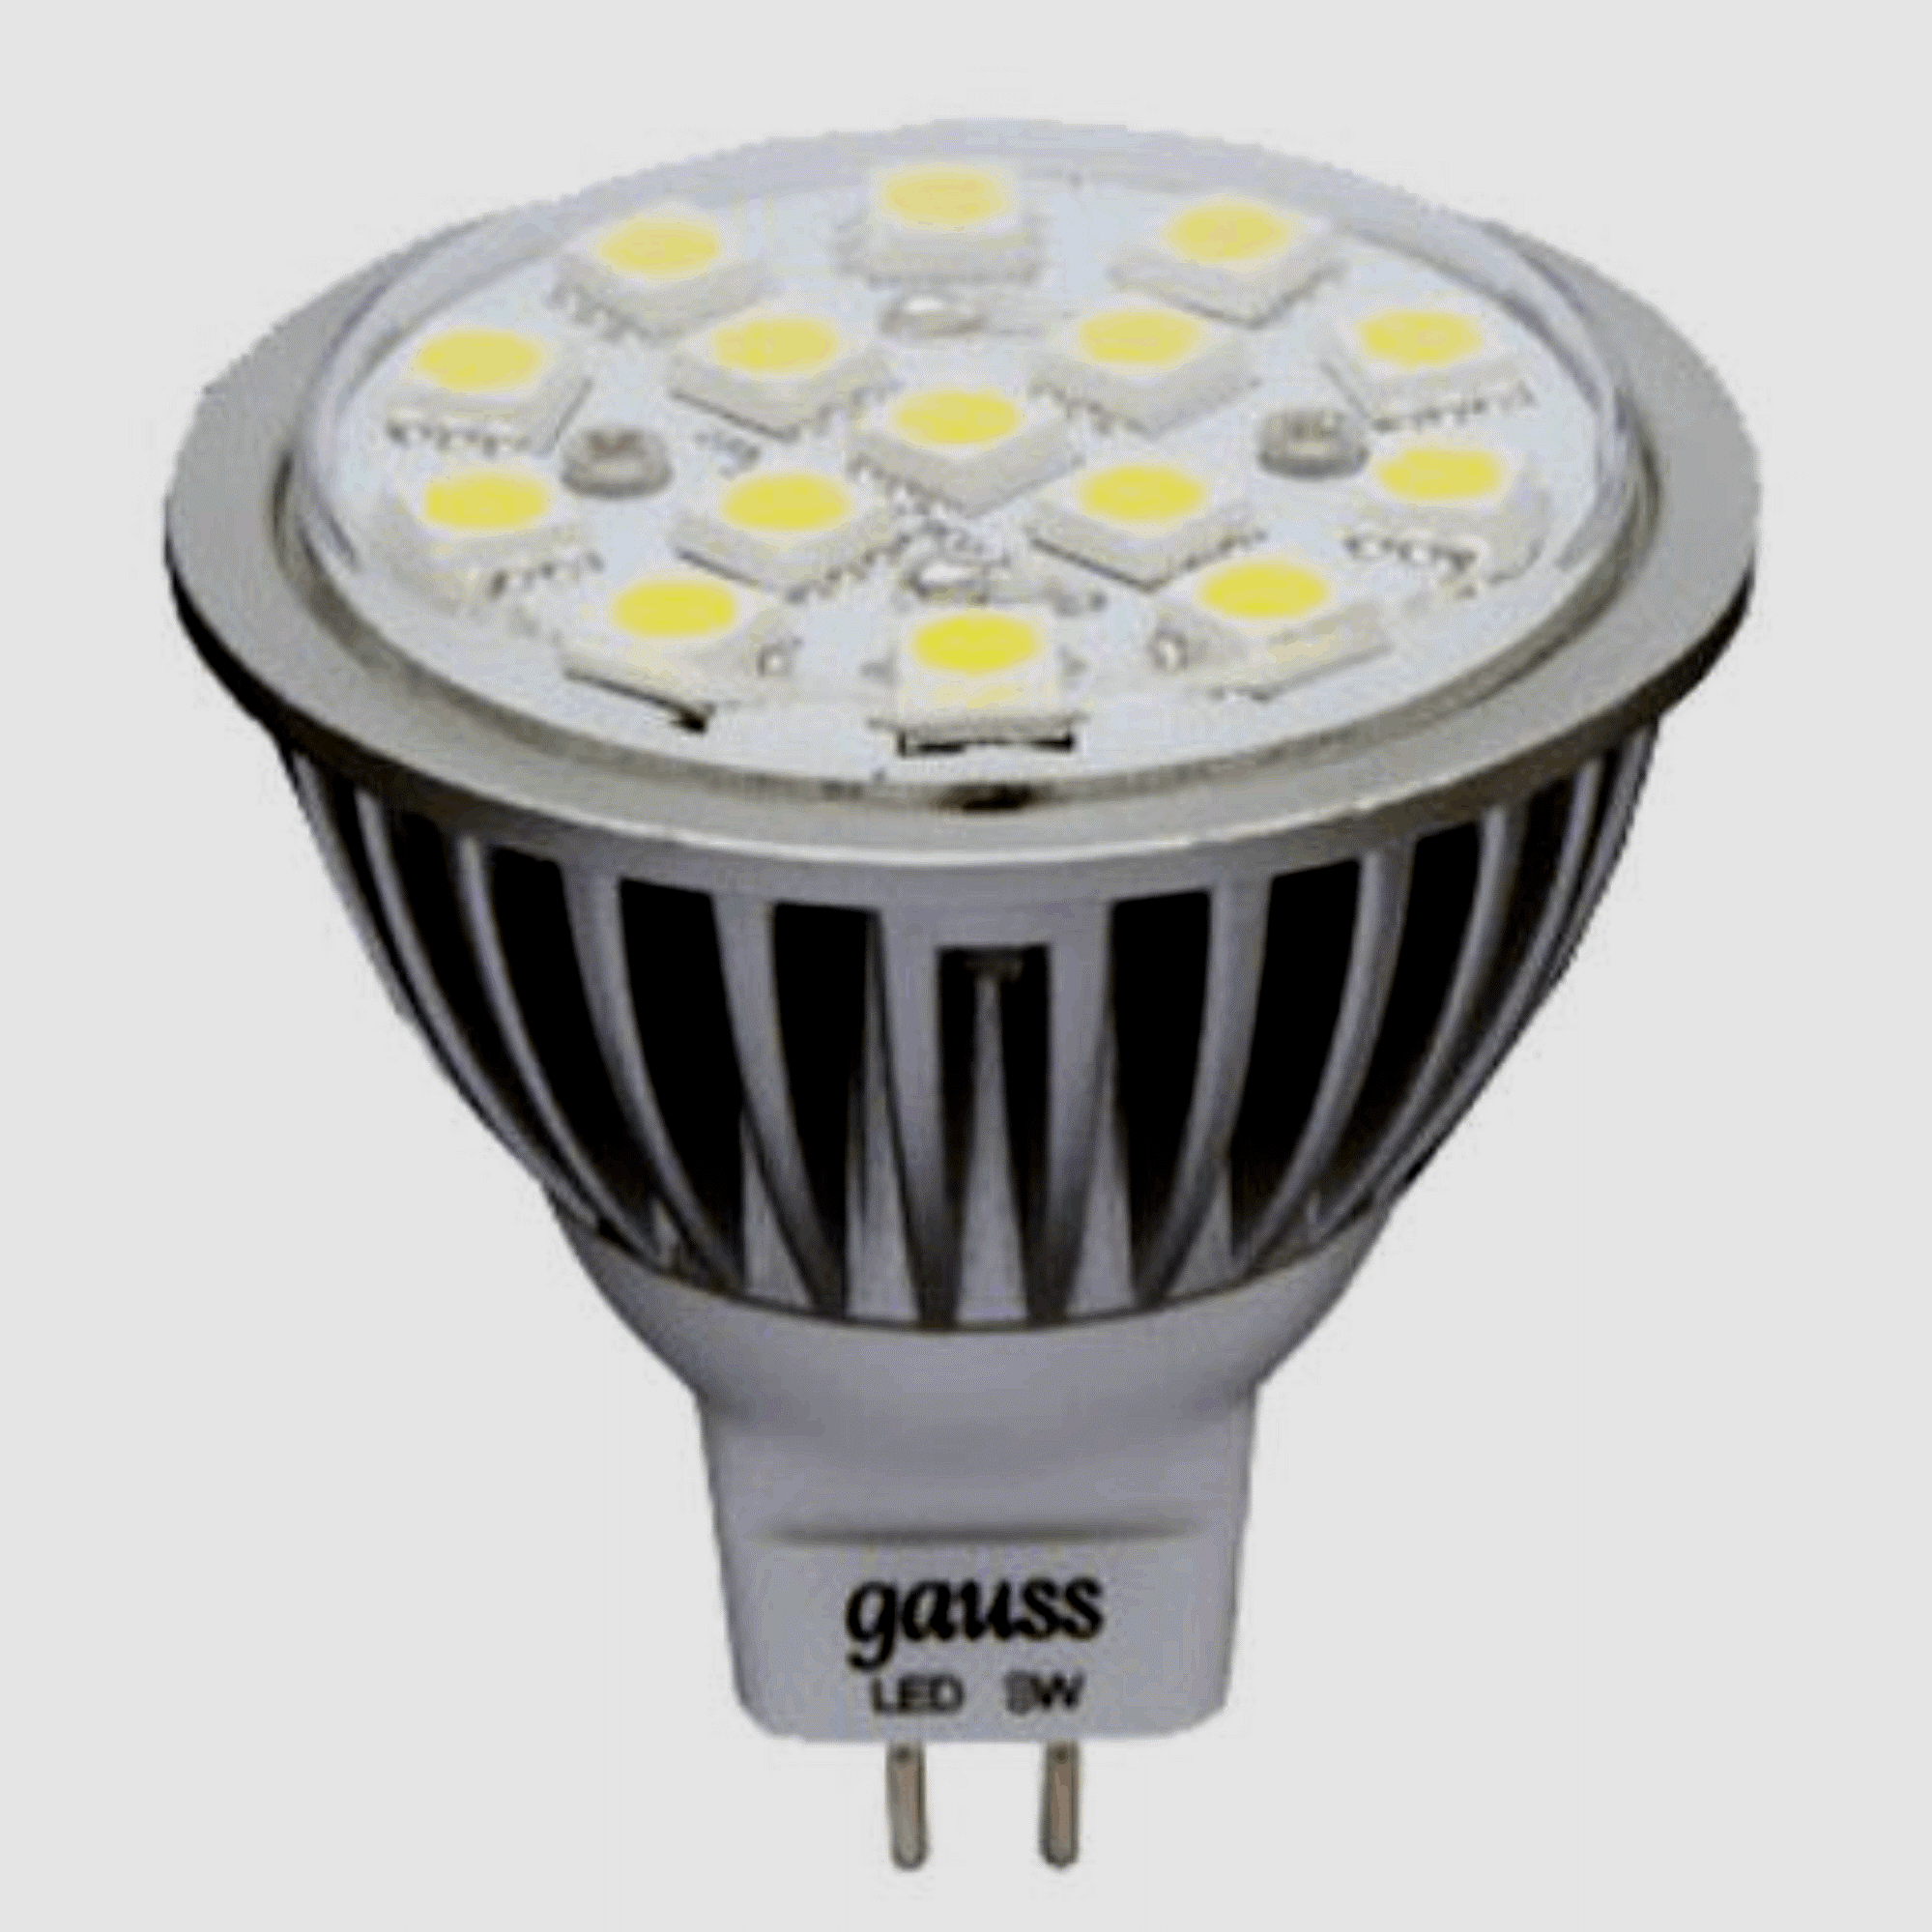 Gu 5.3 светодиодные gauss. Светодиодные лампы 220 вольт цоколь gu5.3. Светодиодная лампа Gauss 4w led 50w. Лампа светодиодная mr16 gu5.3 4w 220v 2700к Эра. Светодиодные лампы Gauss gu10.